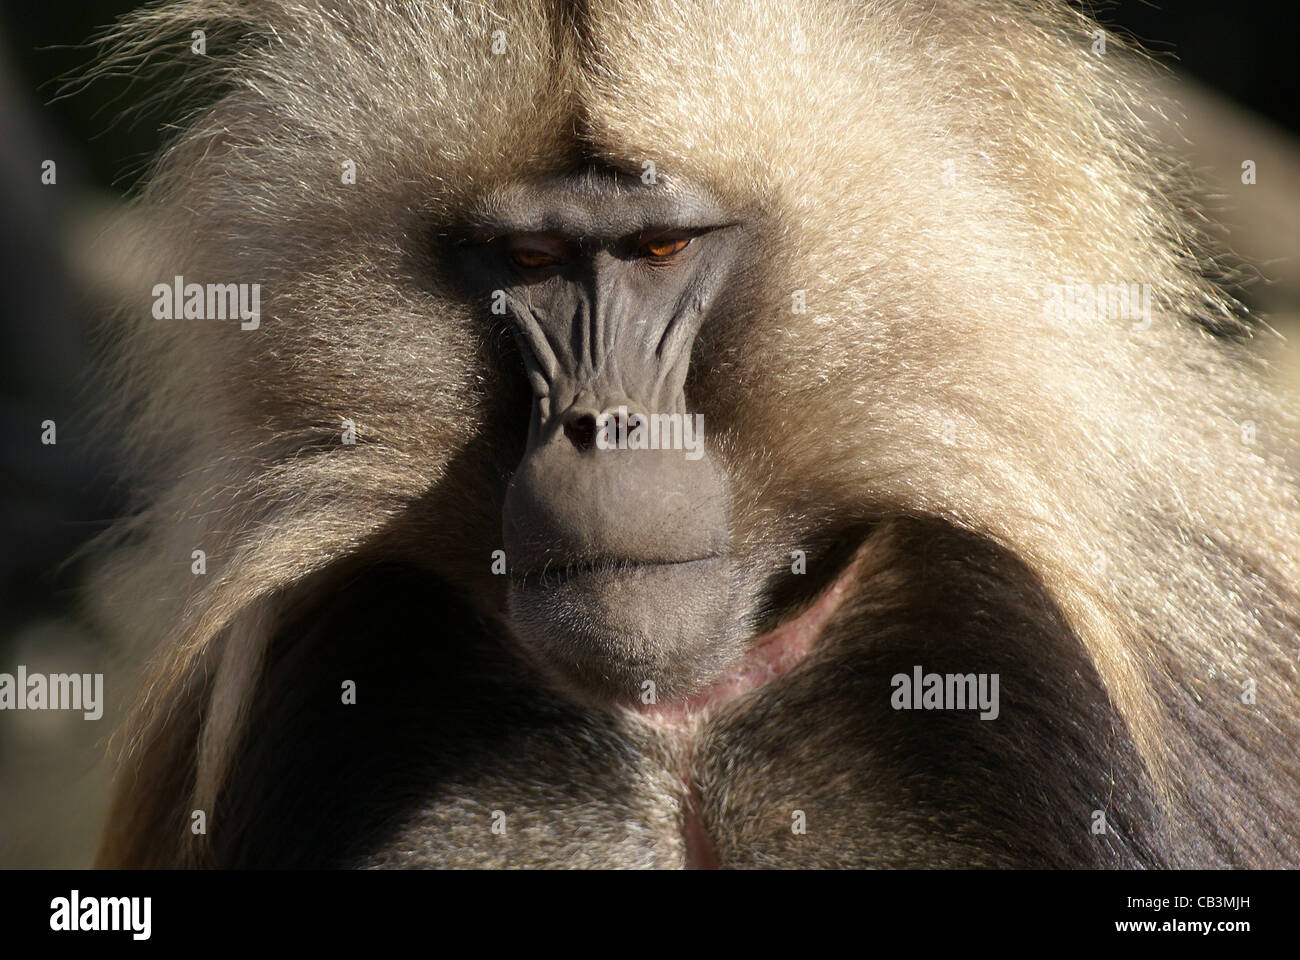 Africa, Ethiopia, Simien mountains, male Gelada monkey Theropithecus gelada Stock Photo